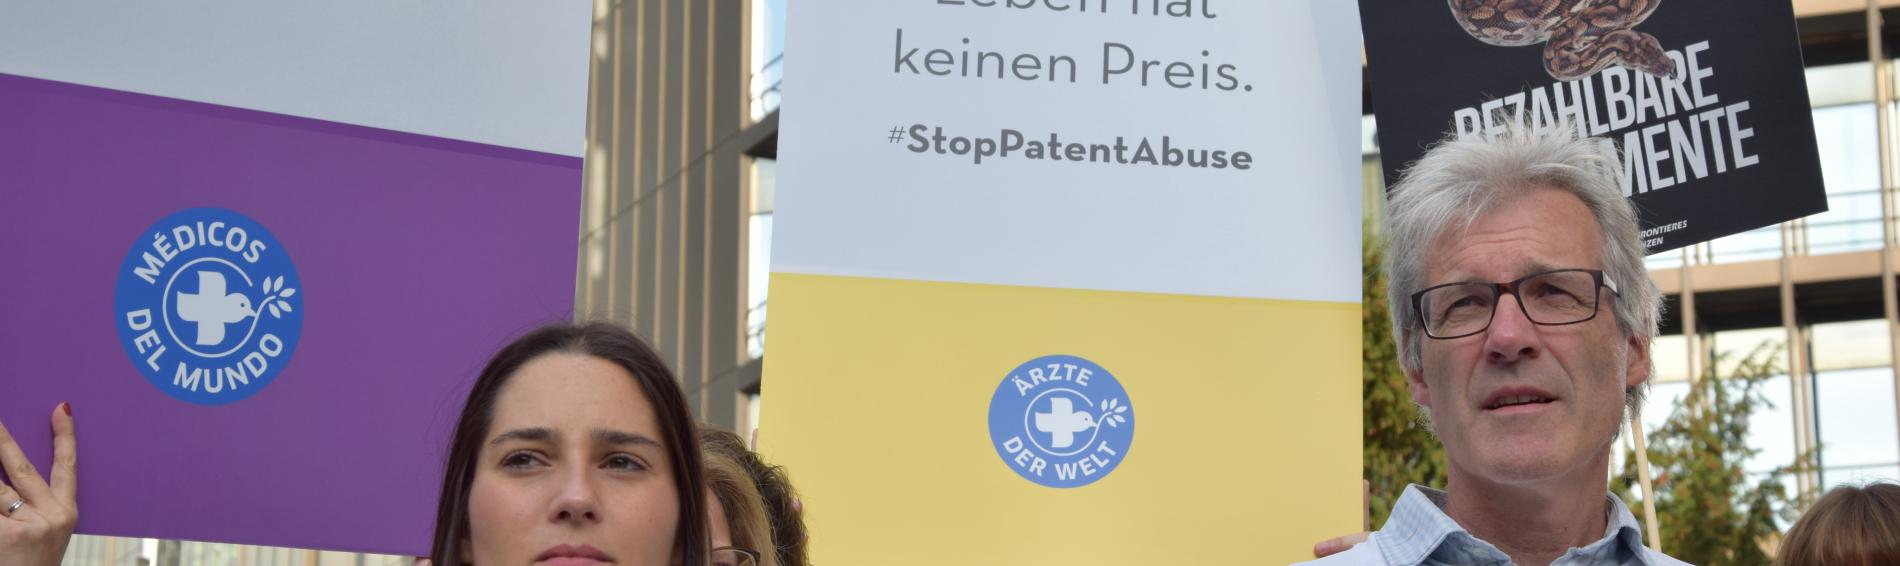 Protest vor dem Europäischen Patentamt. Foto: Lukas Lauber